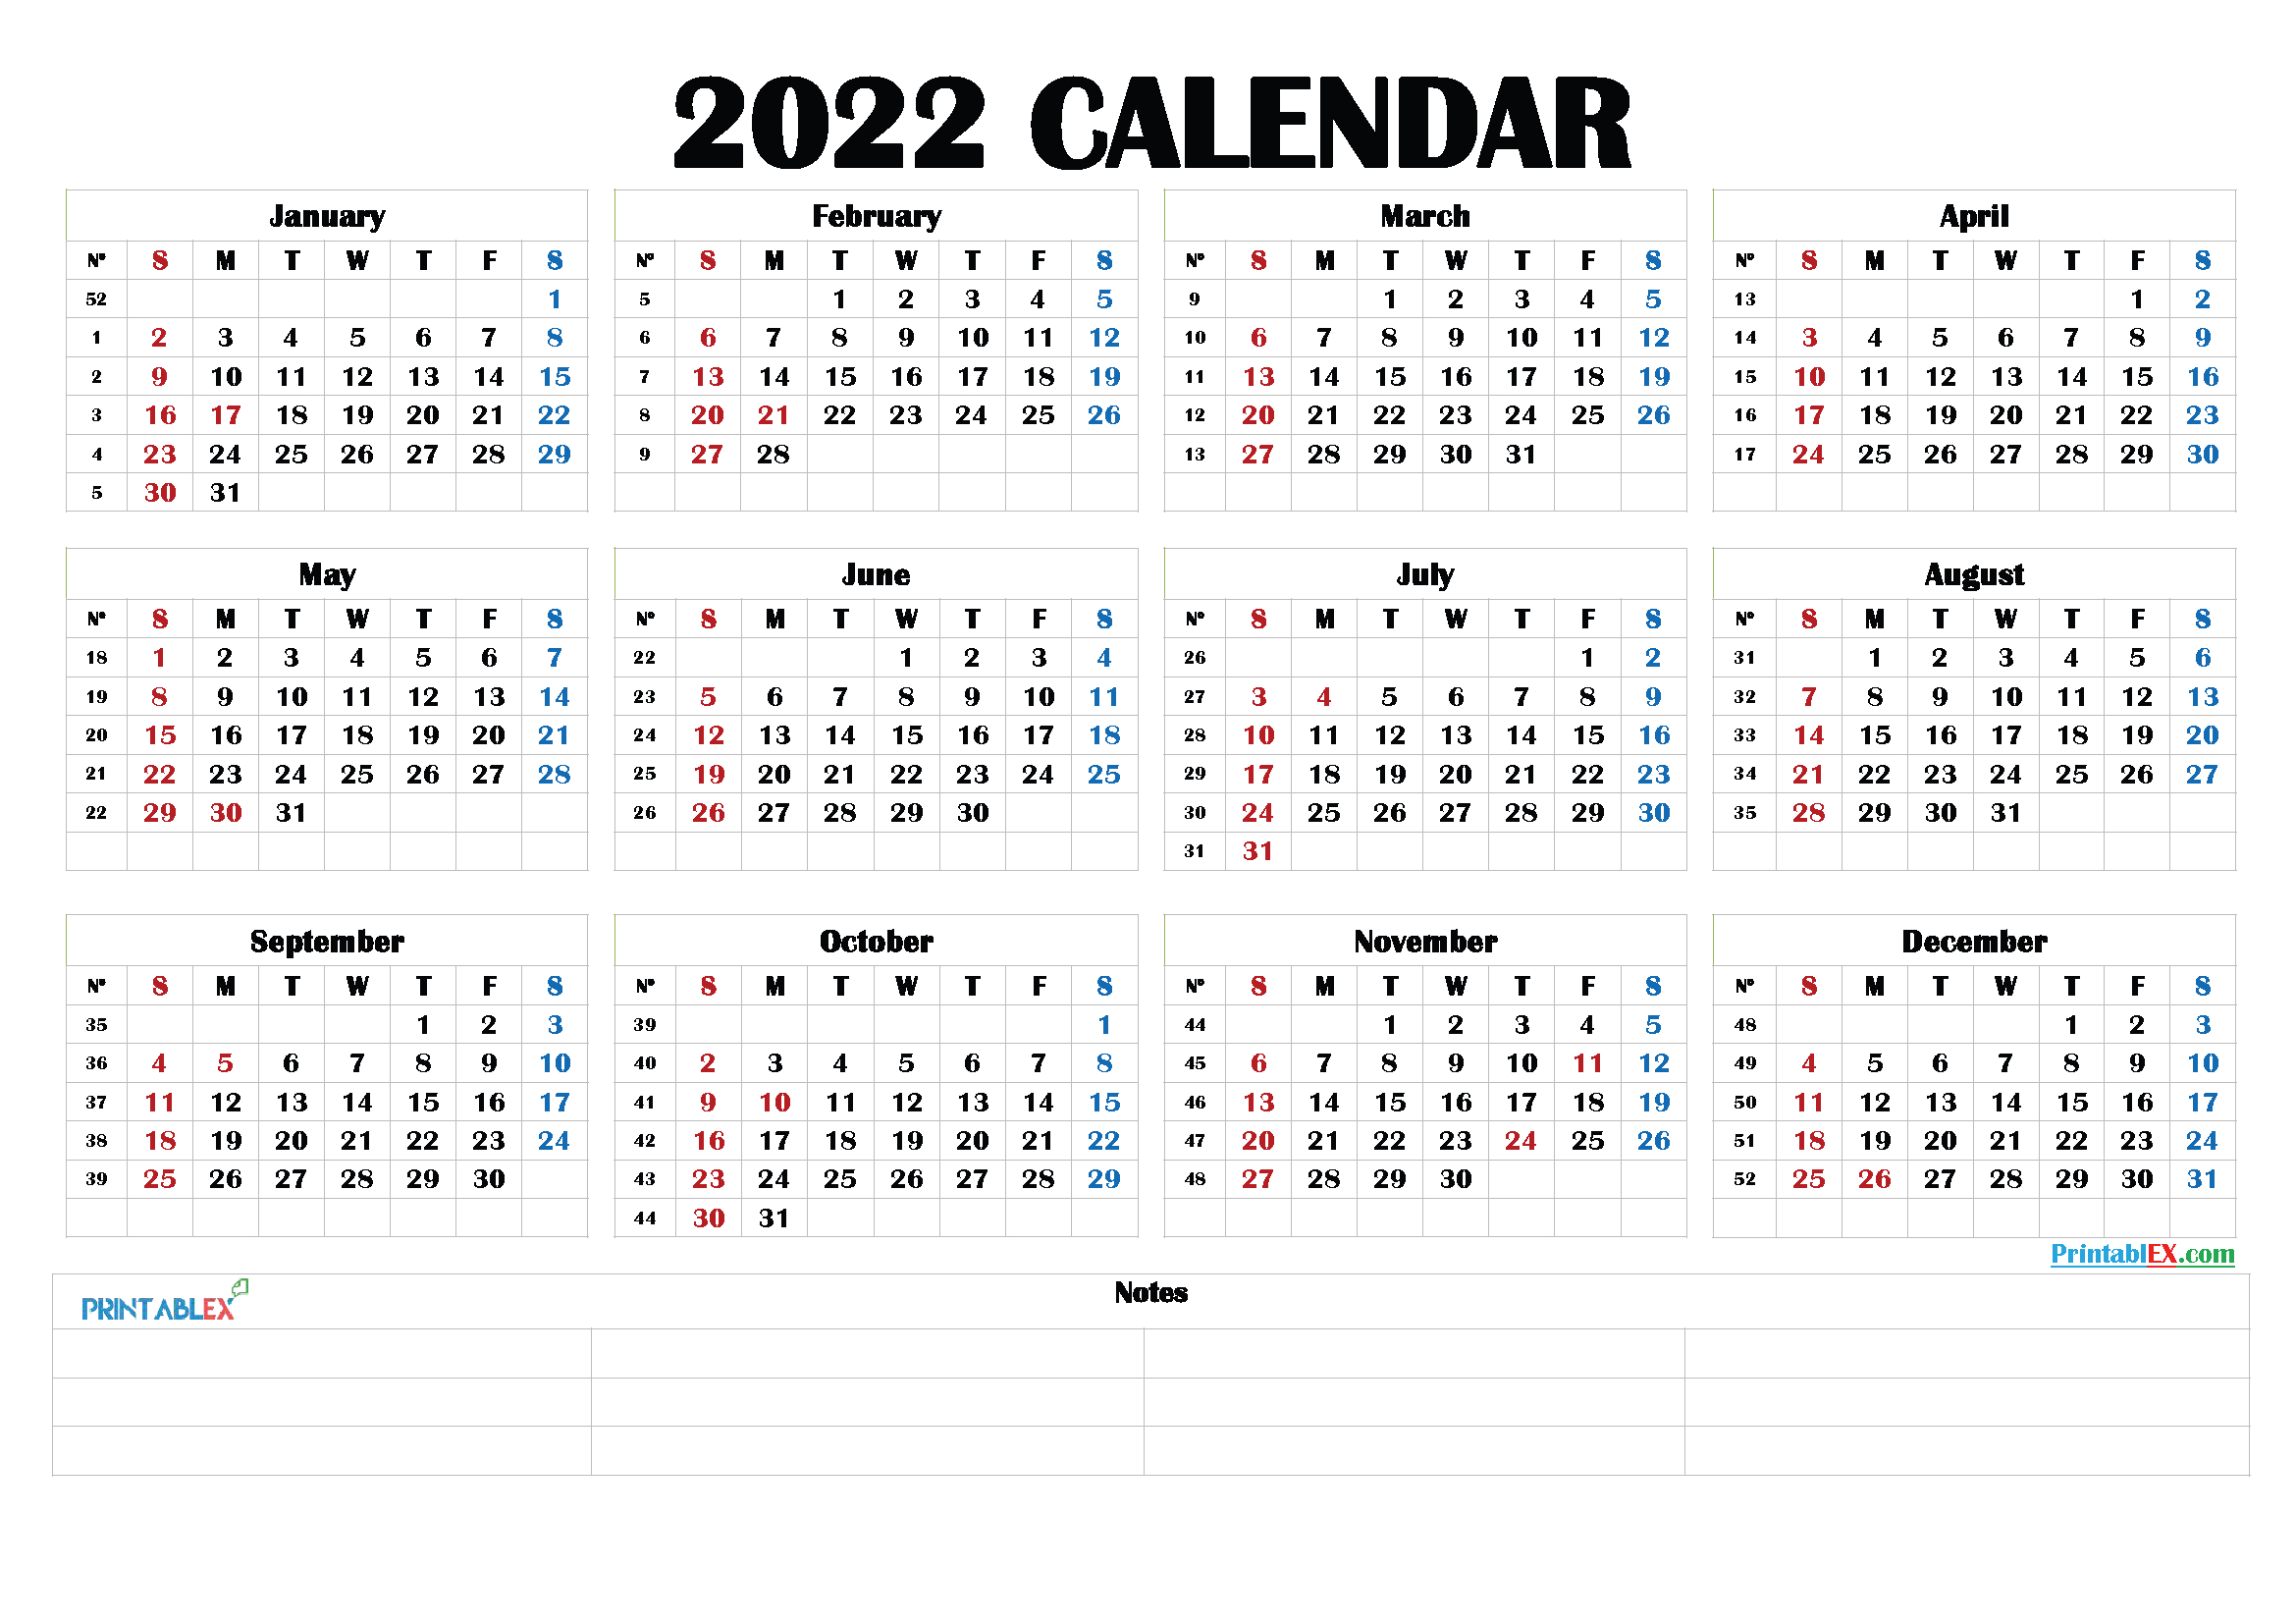 Free Printable 2022 Calendar By Month - 22Ytw190